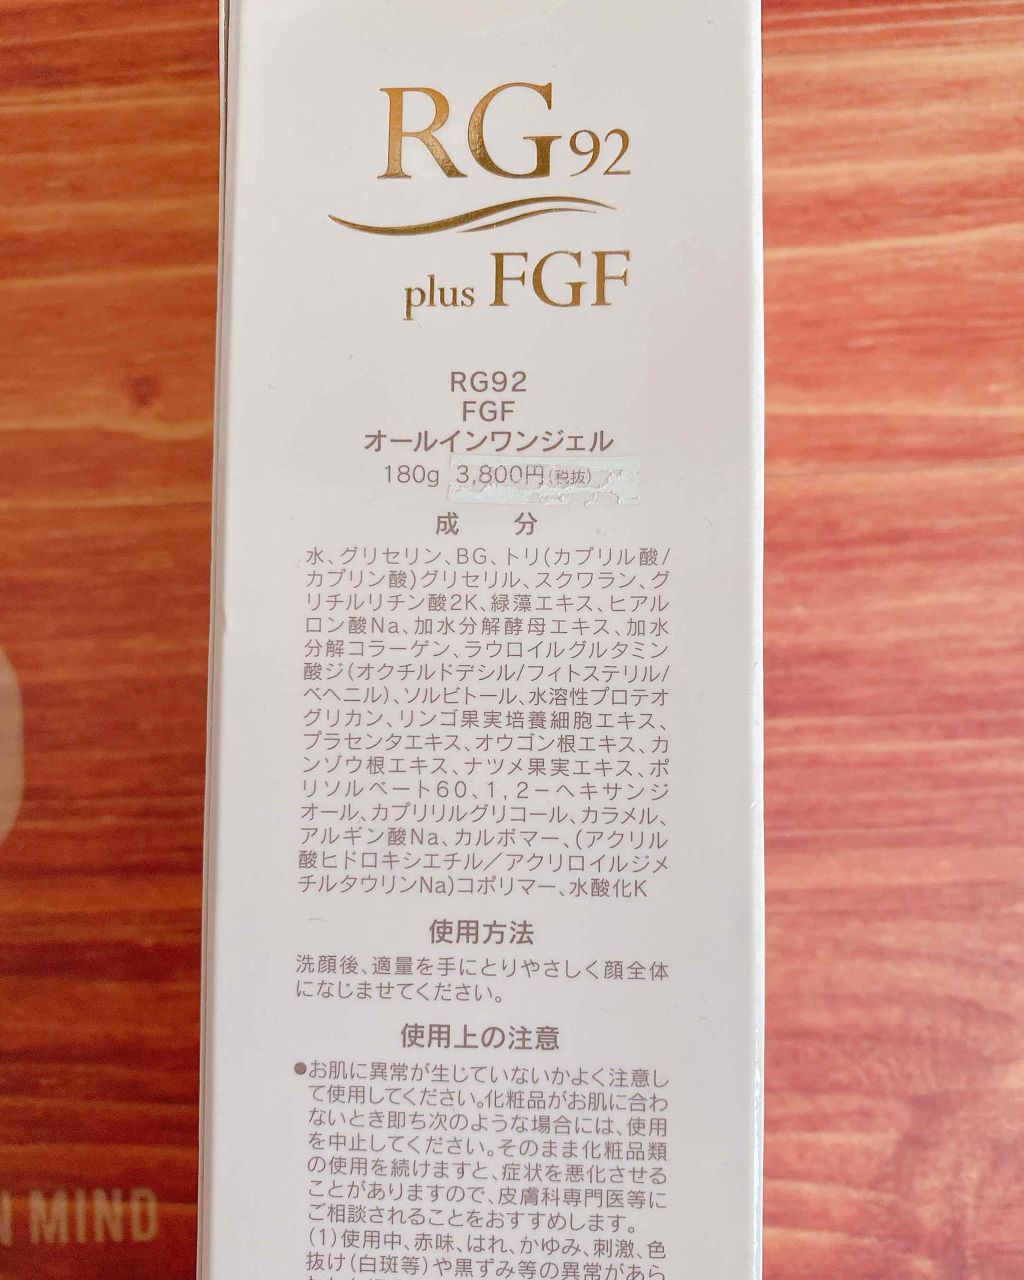 Rg92 Fgf オールインワンジェル サラヴィオの口コミ 混合肌におすすめのオールインワン化粧品 サラヴィオ化粧品rg9 By Pipipi 30代後半 Lips